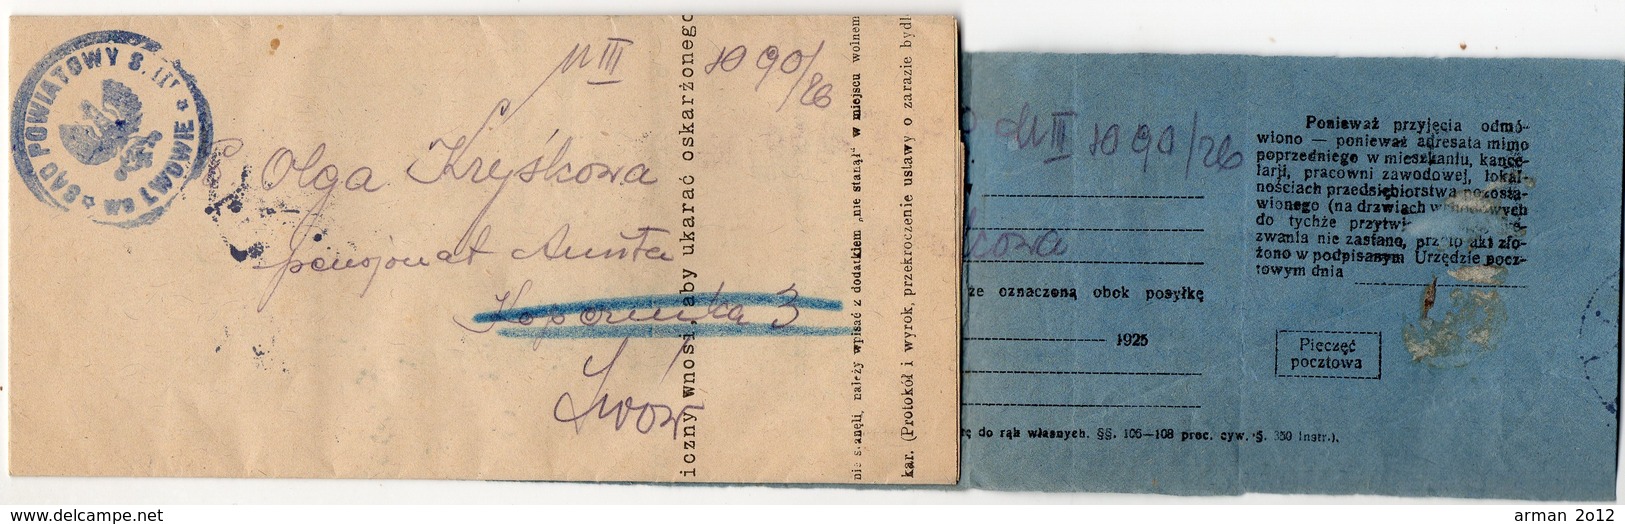 Poland Ukraine Lwow  Postage Due 1926 - Covers & Documents